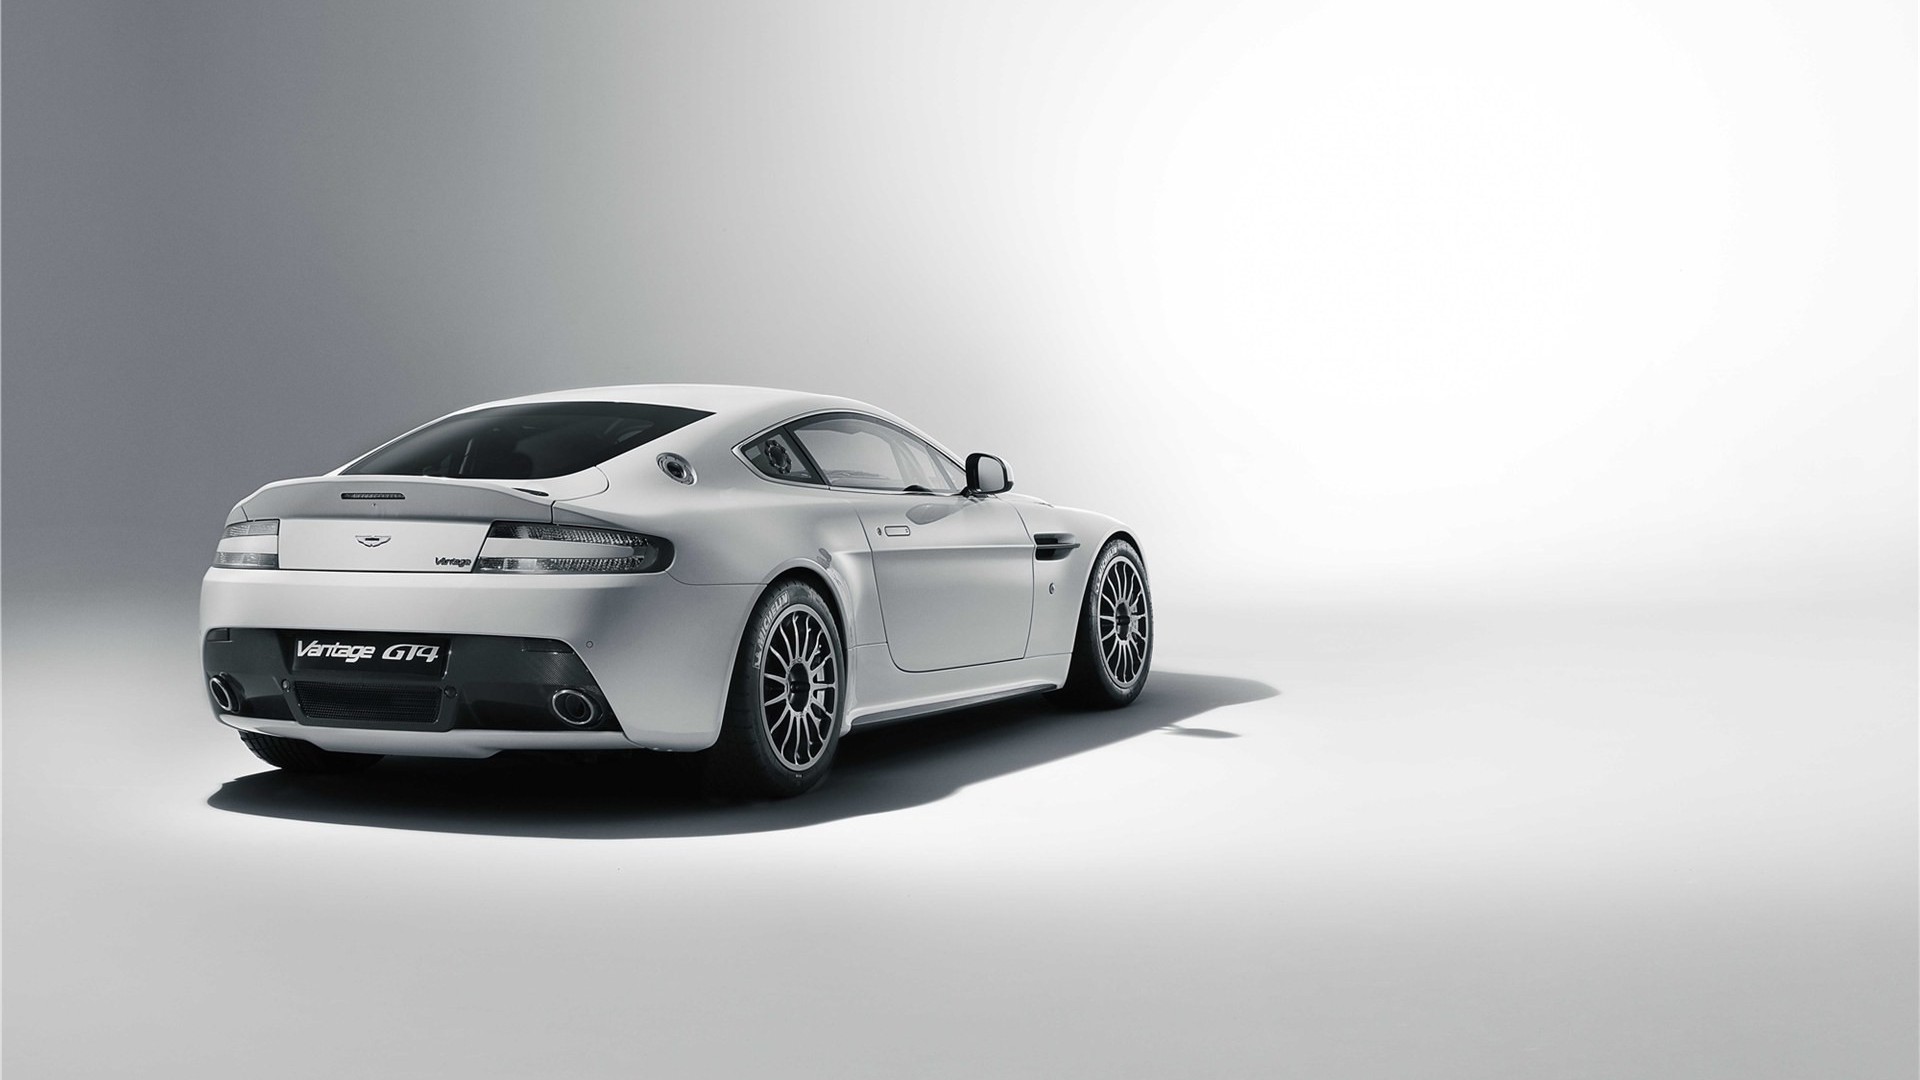 Melhores papéis de parede de Aston Martin Vantage Gt4 para tela do telefone